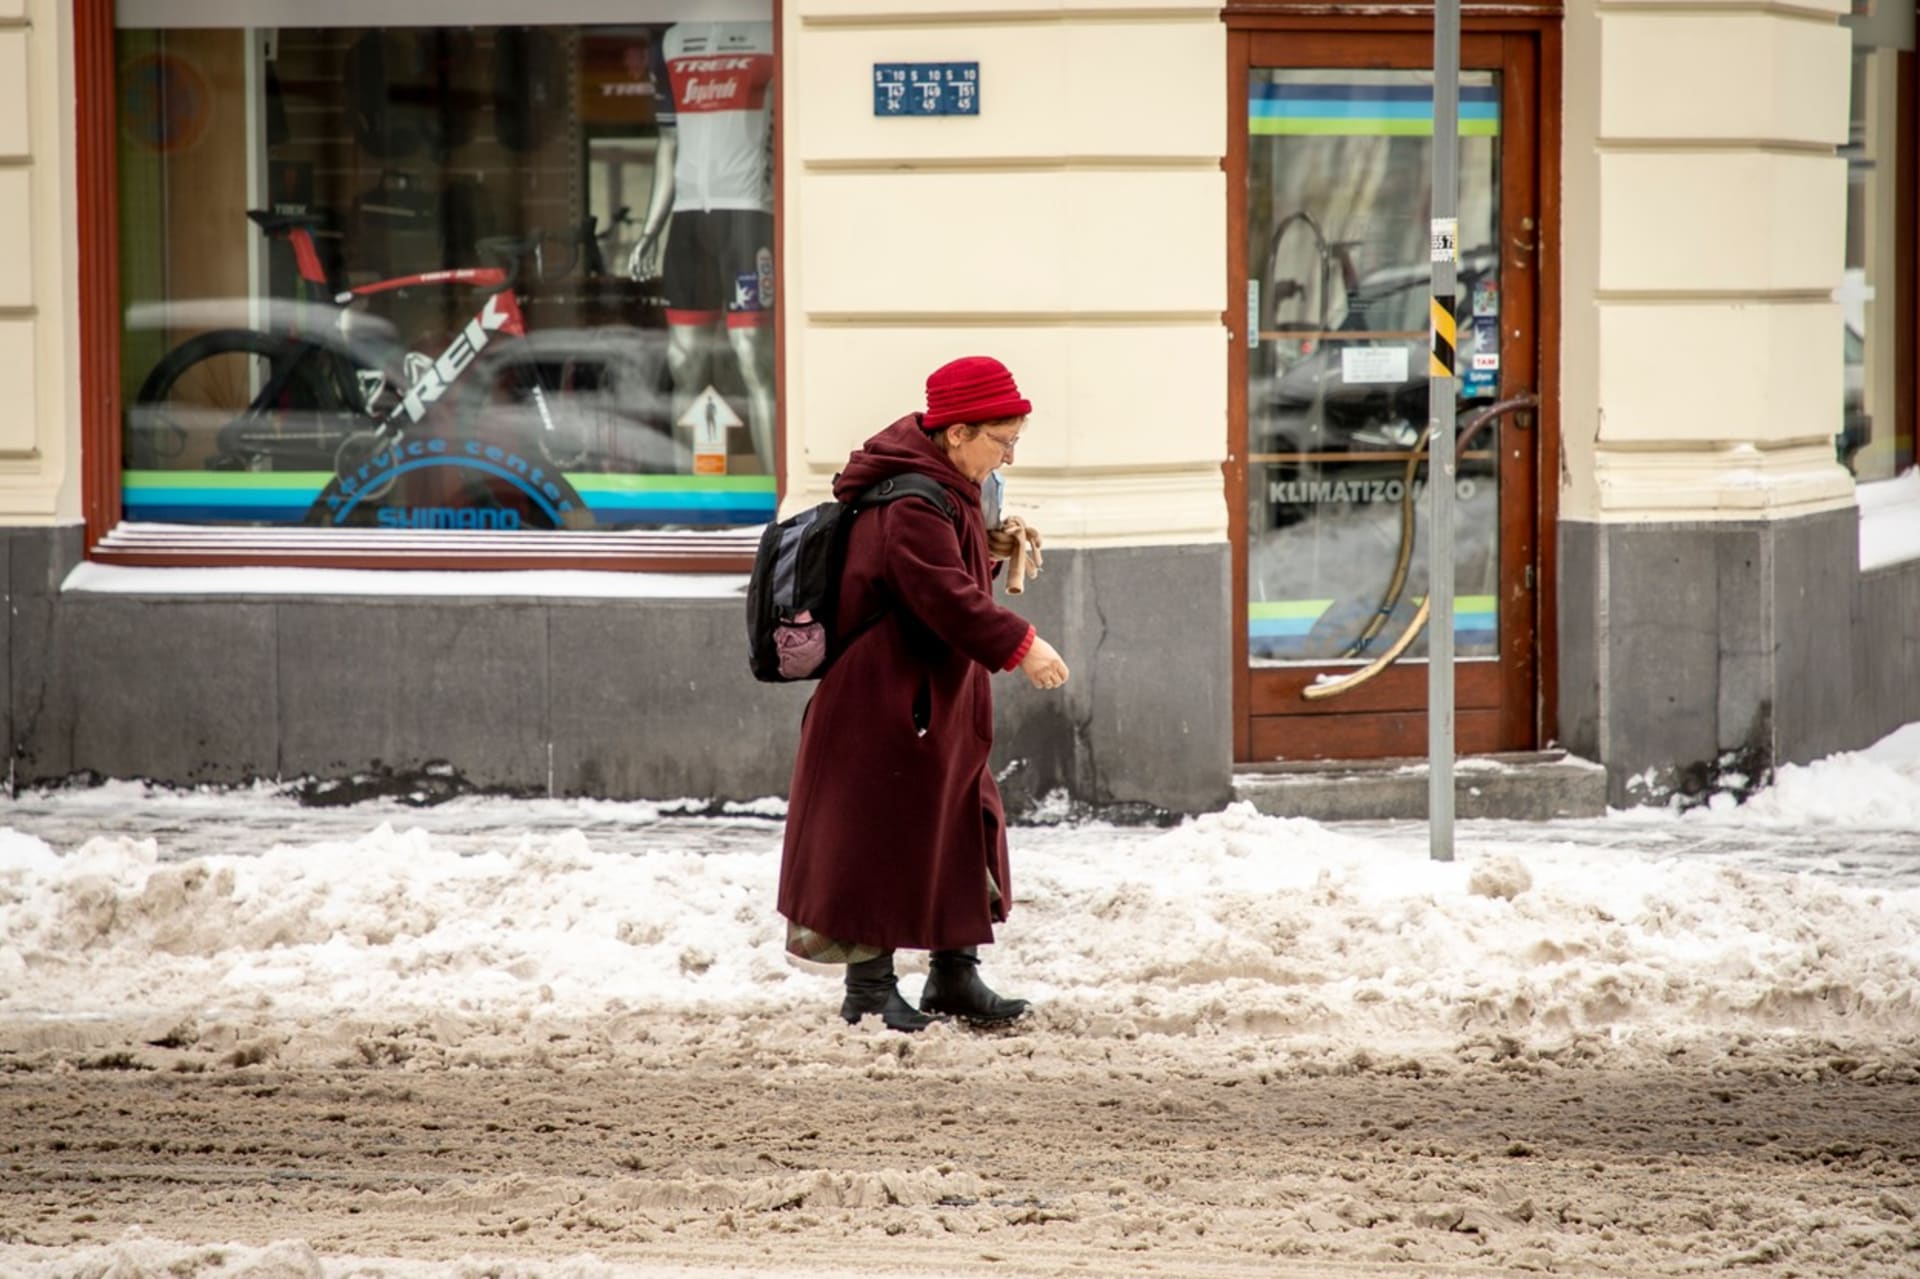 Za údržbu chodníků odpovídá obec. Pohyb na zasněžené komunikaci je náročný zejména pro seniory. (Foto: Profimedia)